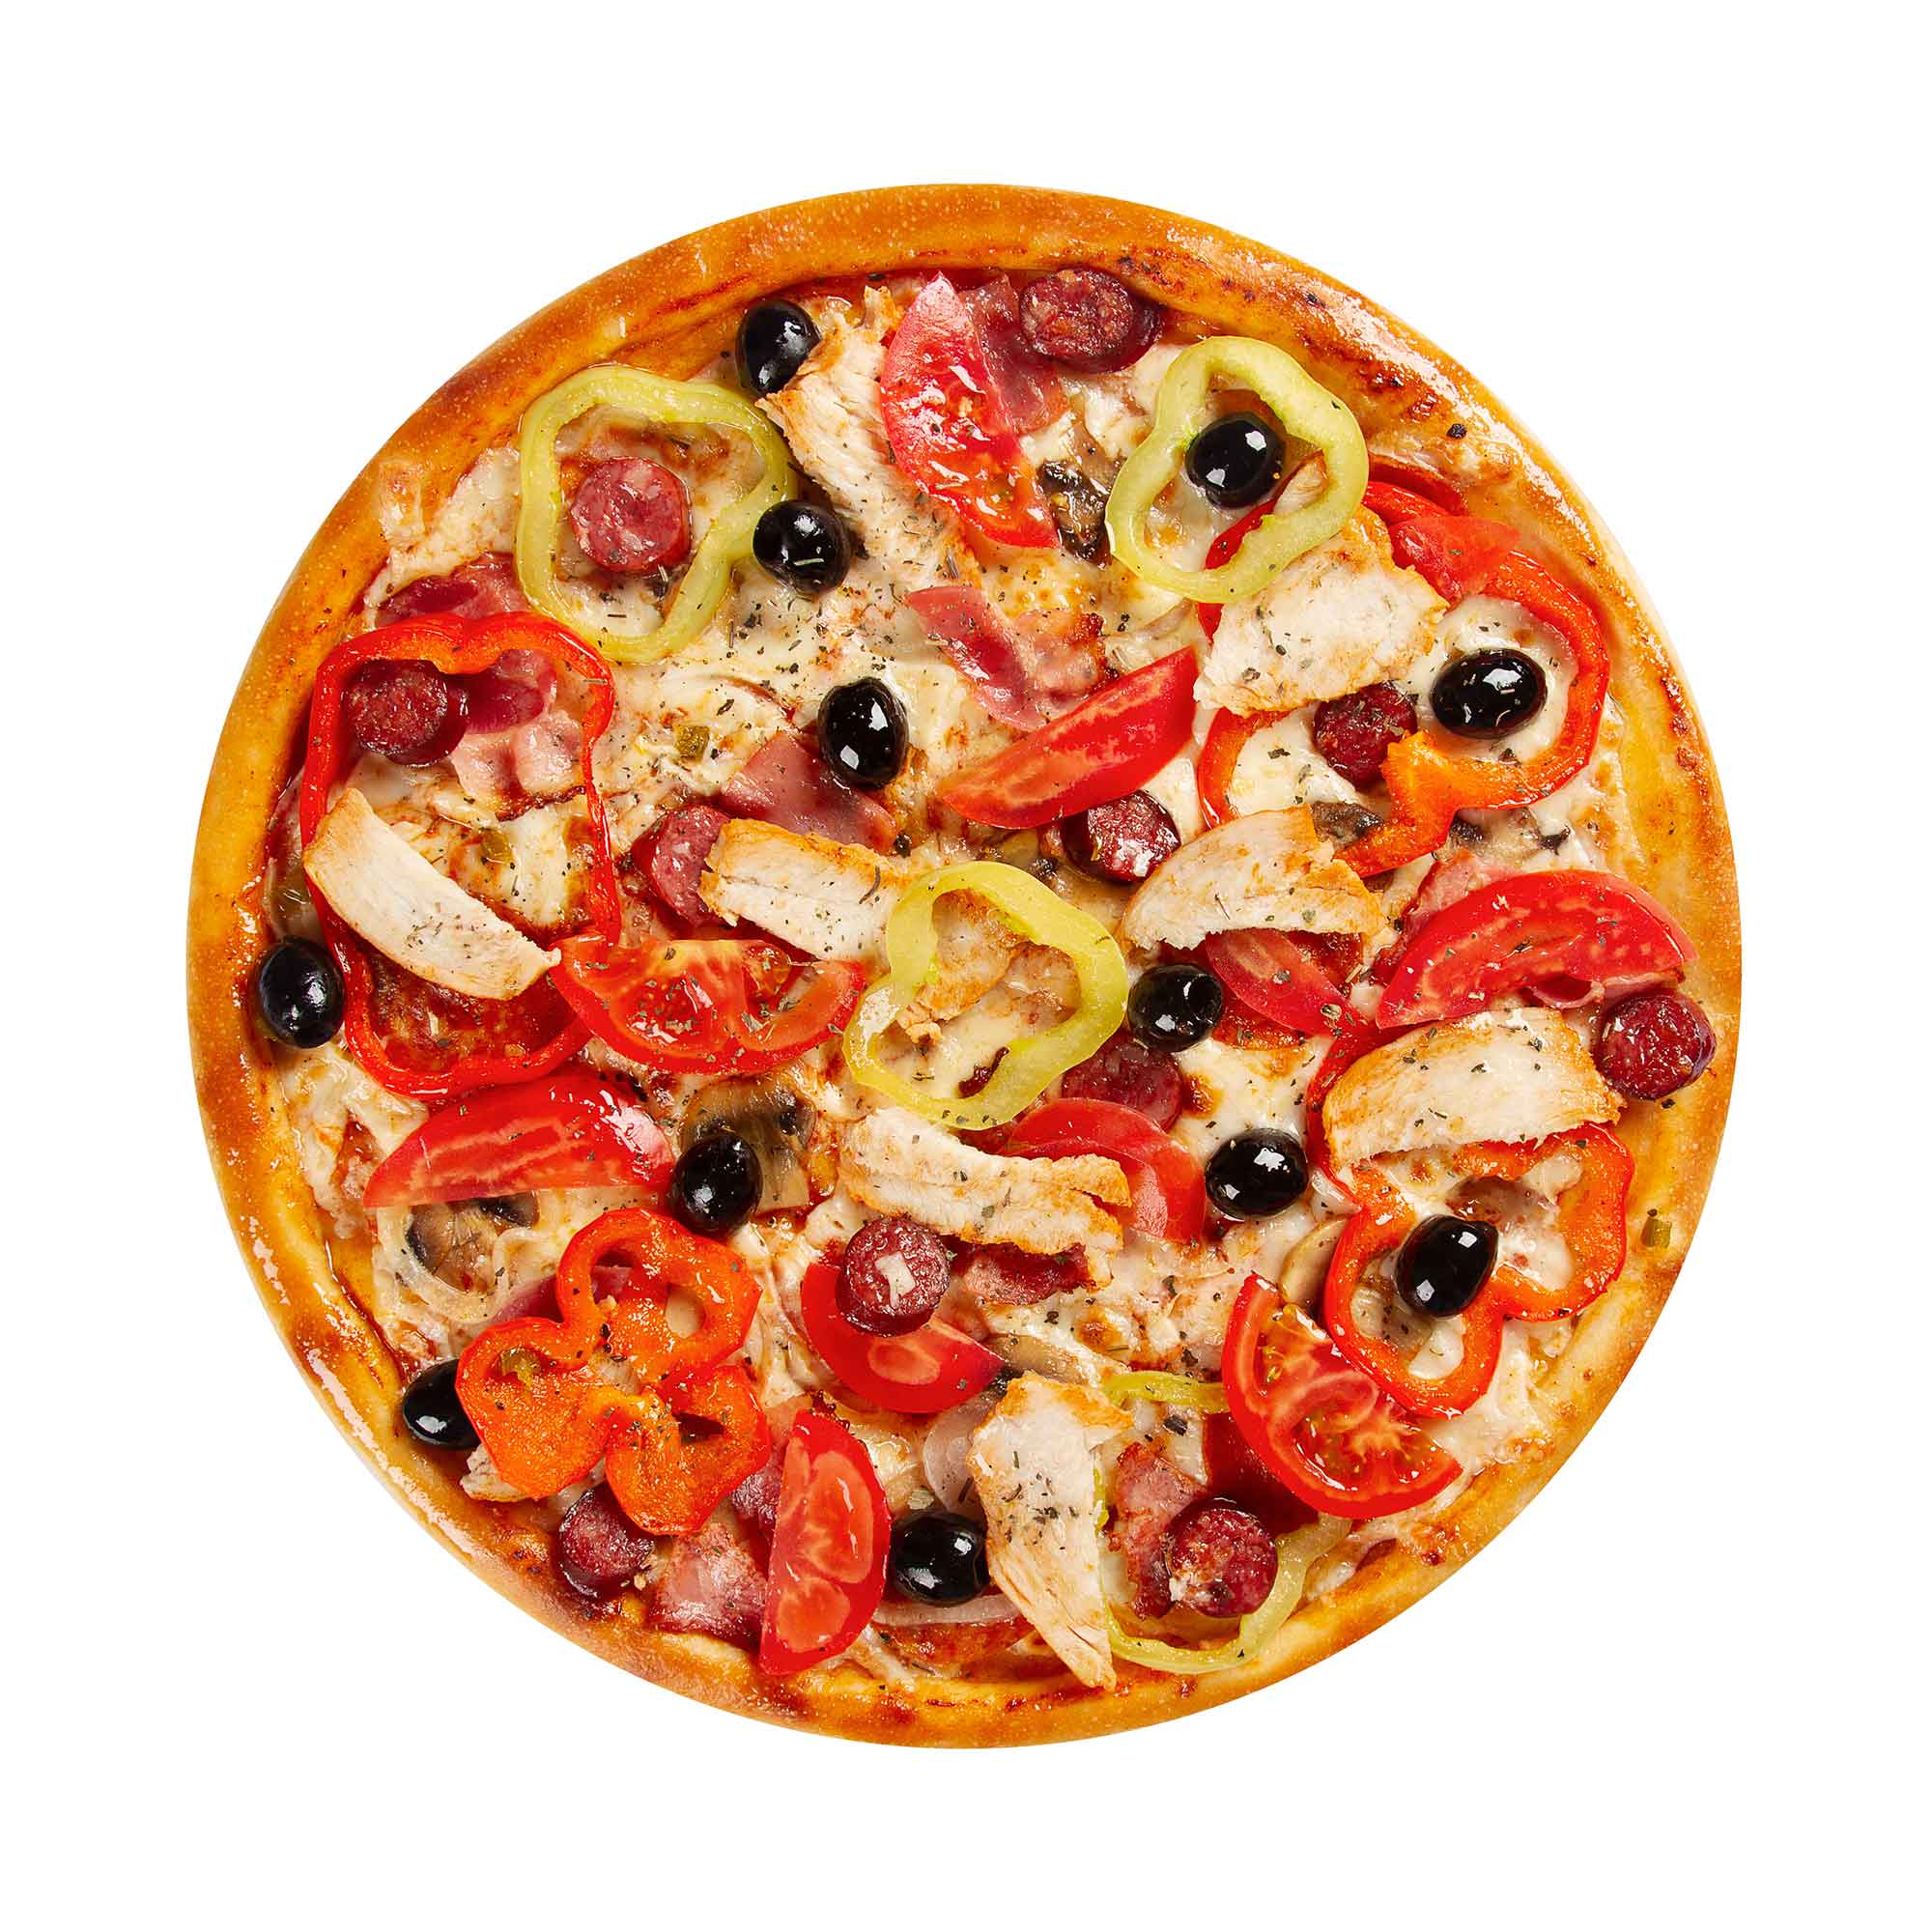 я хочу пиццу с перцем луком пепперони и оливками фото 88